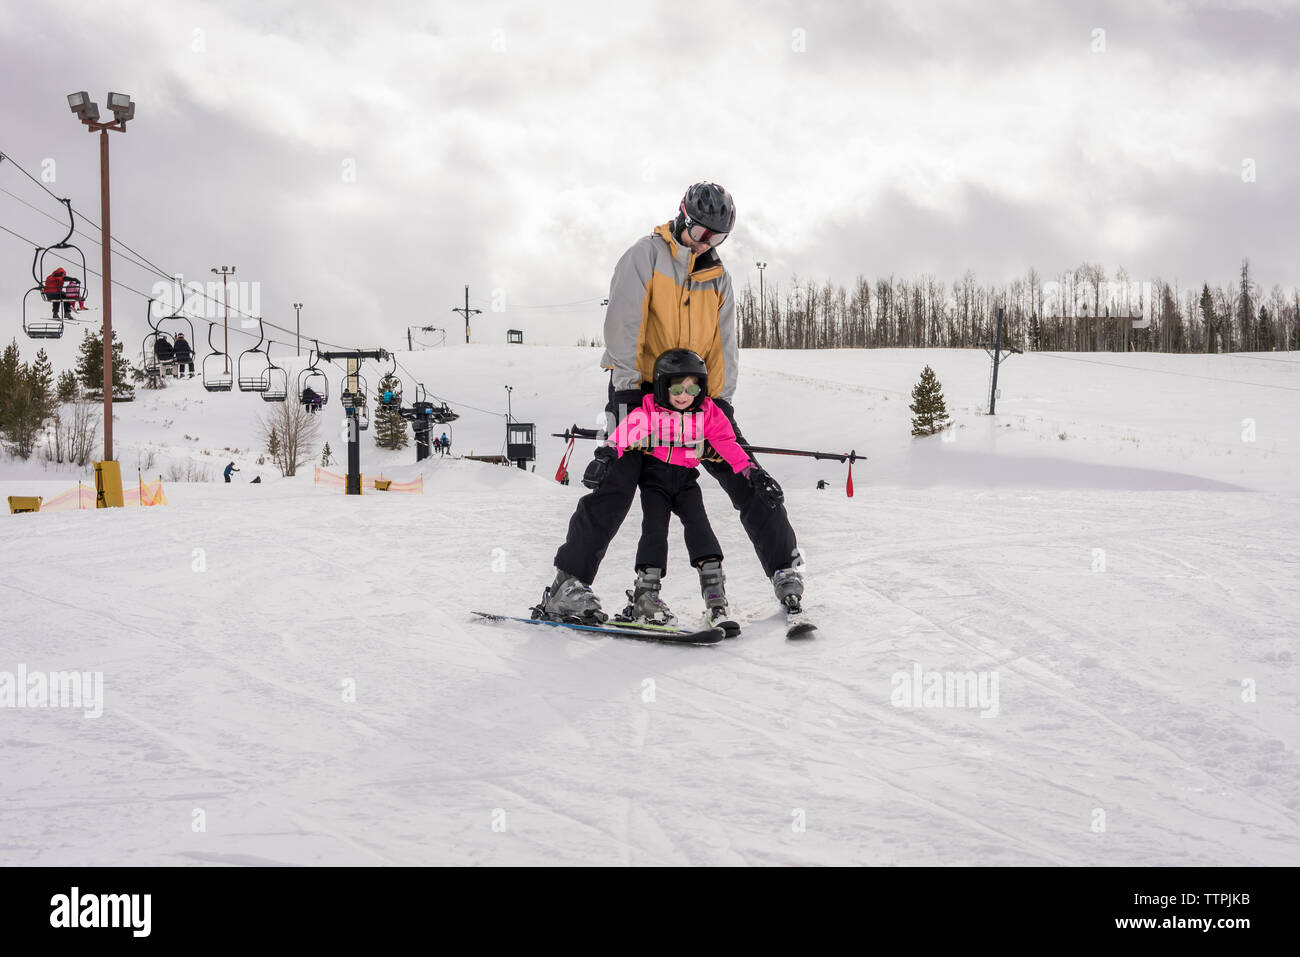 Padre con hija esquiando en paisaje cubierto de nieve contra el cielo nublado Foto de stock